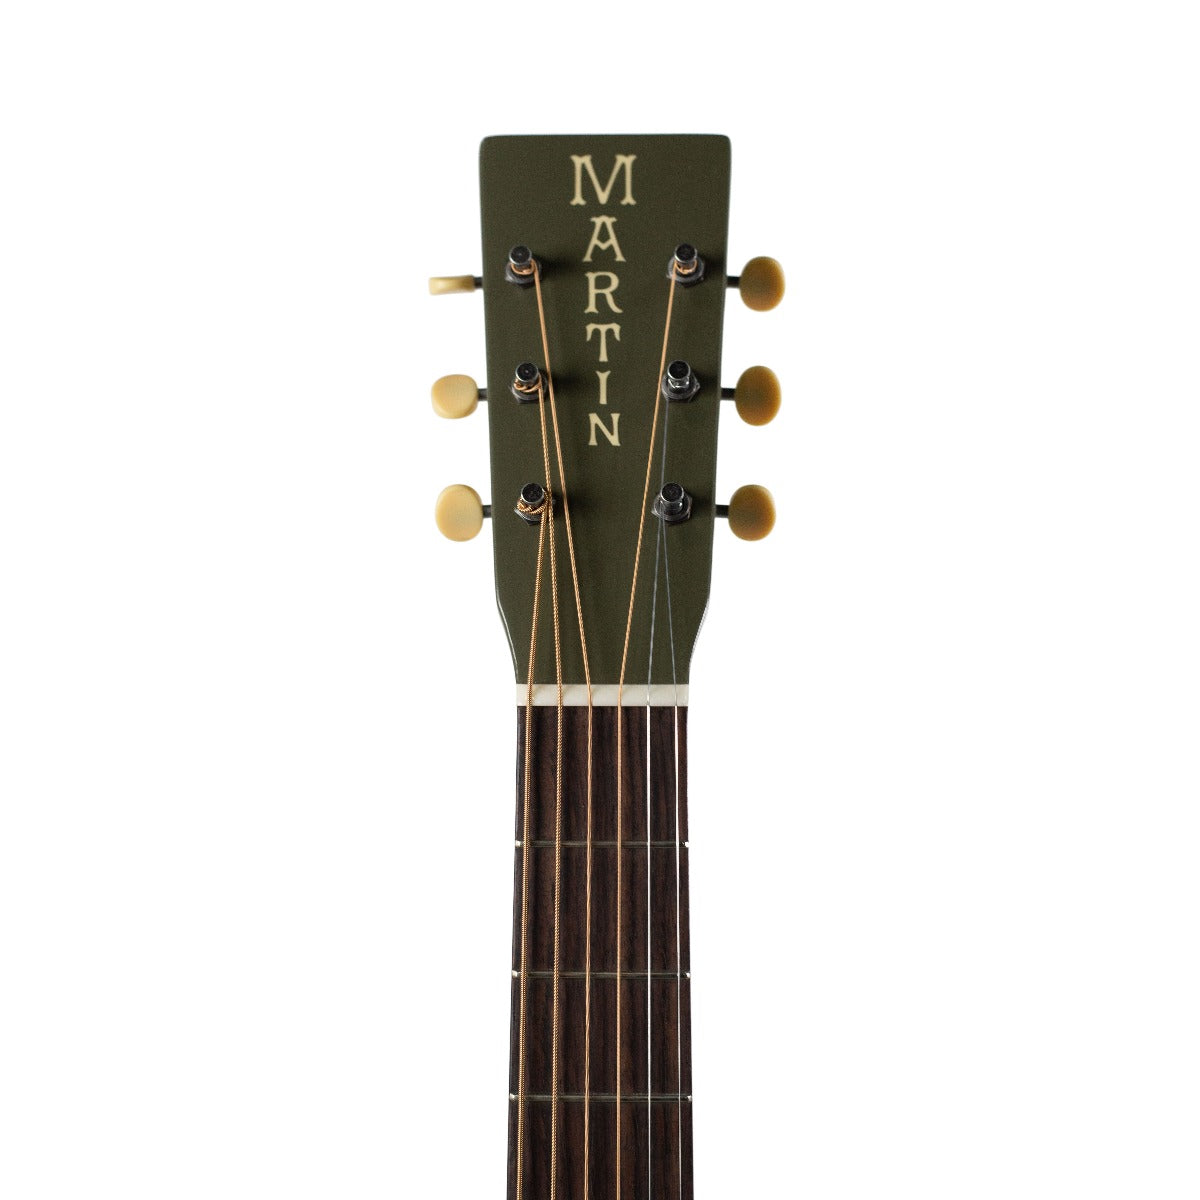 Martin Custom Shop Limited Edition 00 14 Fret Slope Shoulder Acoustic Guitar